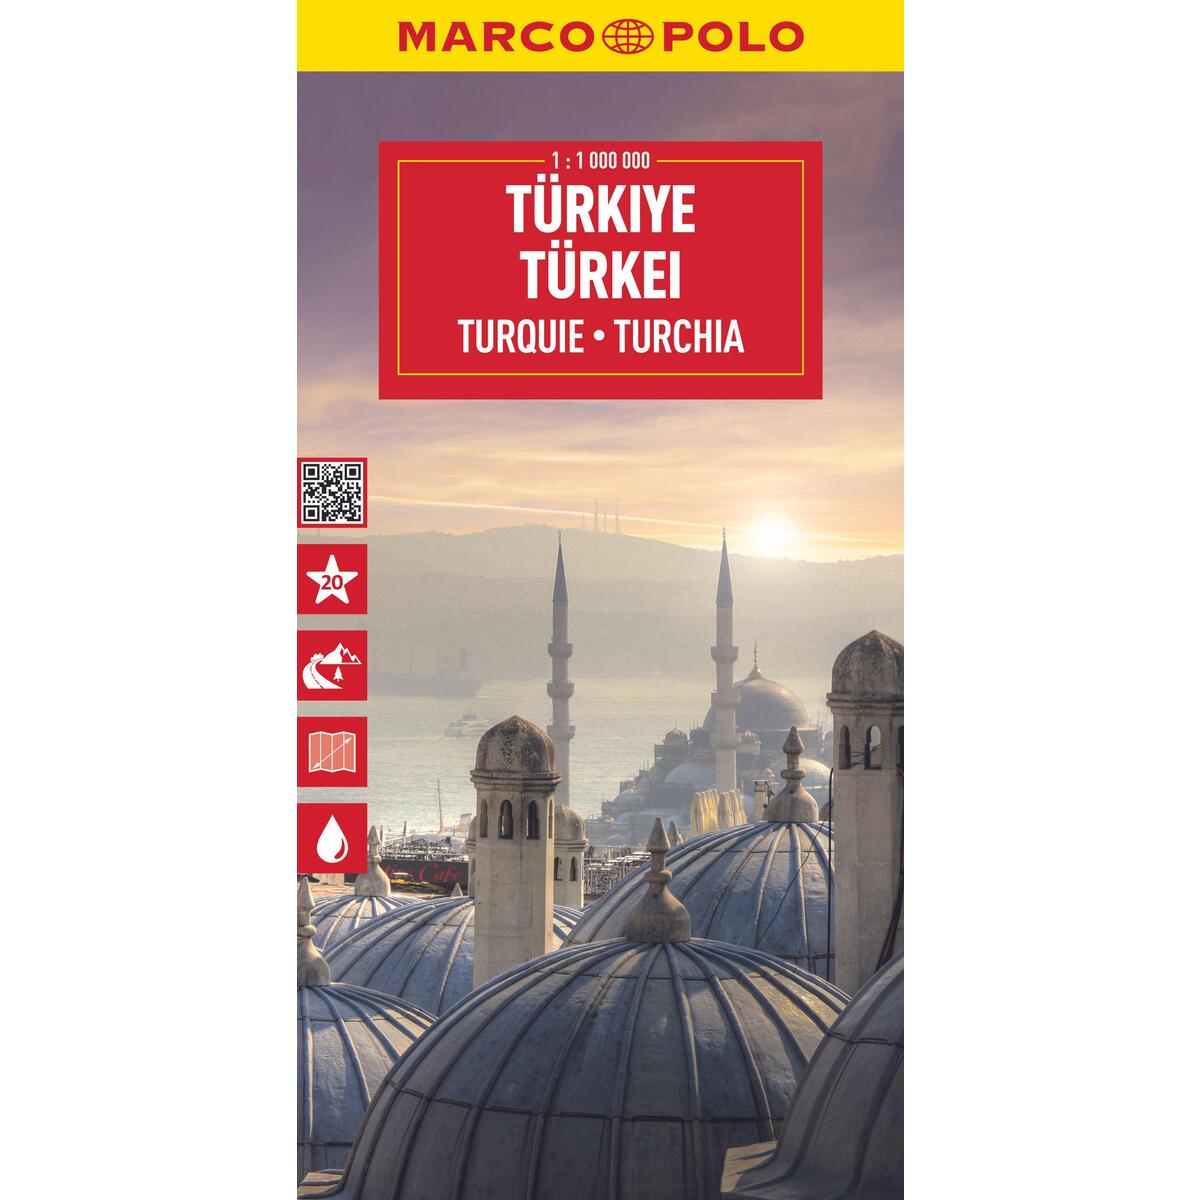 MARCO POLO Reisekarte Türkei 1:1 Mio. von Mairdumont